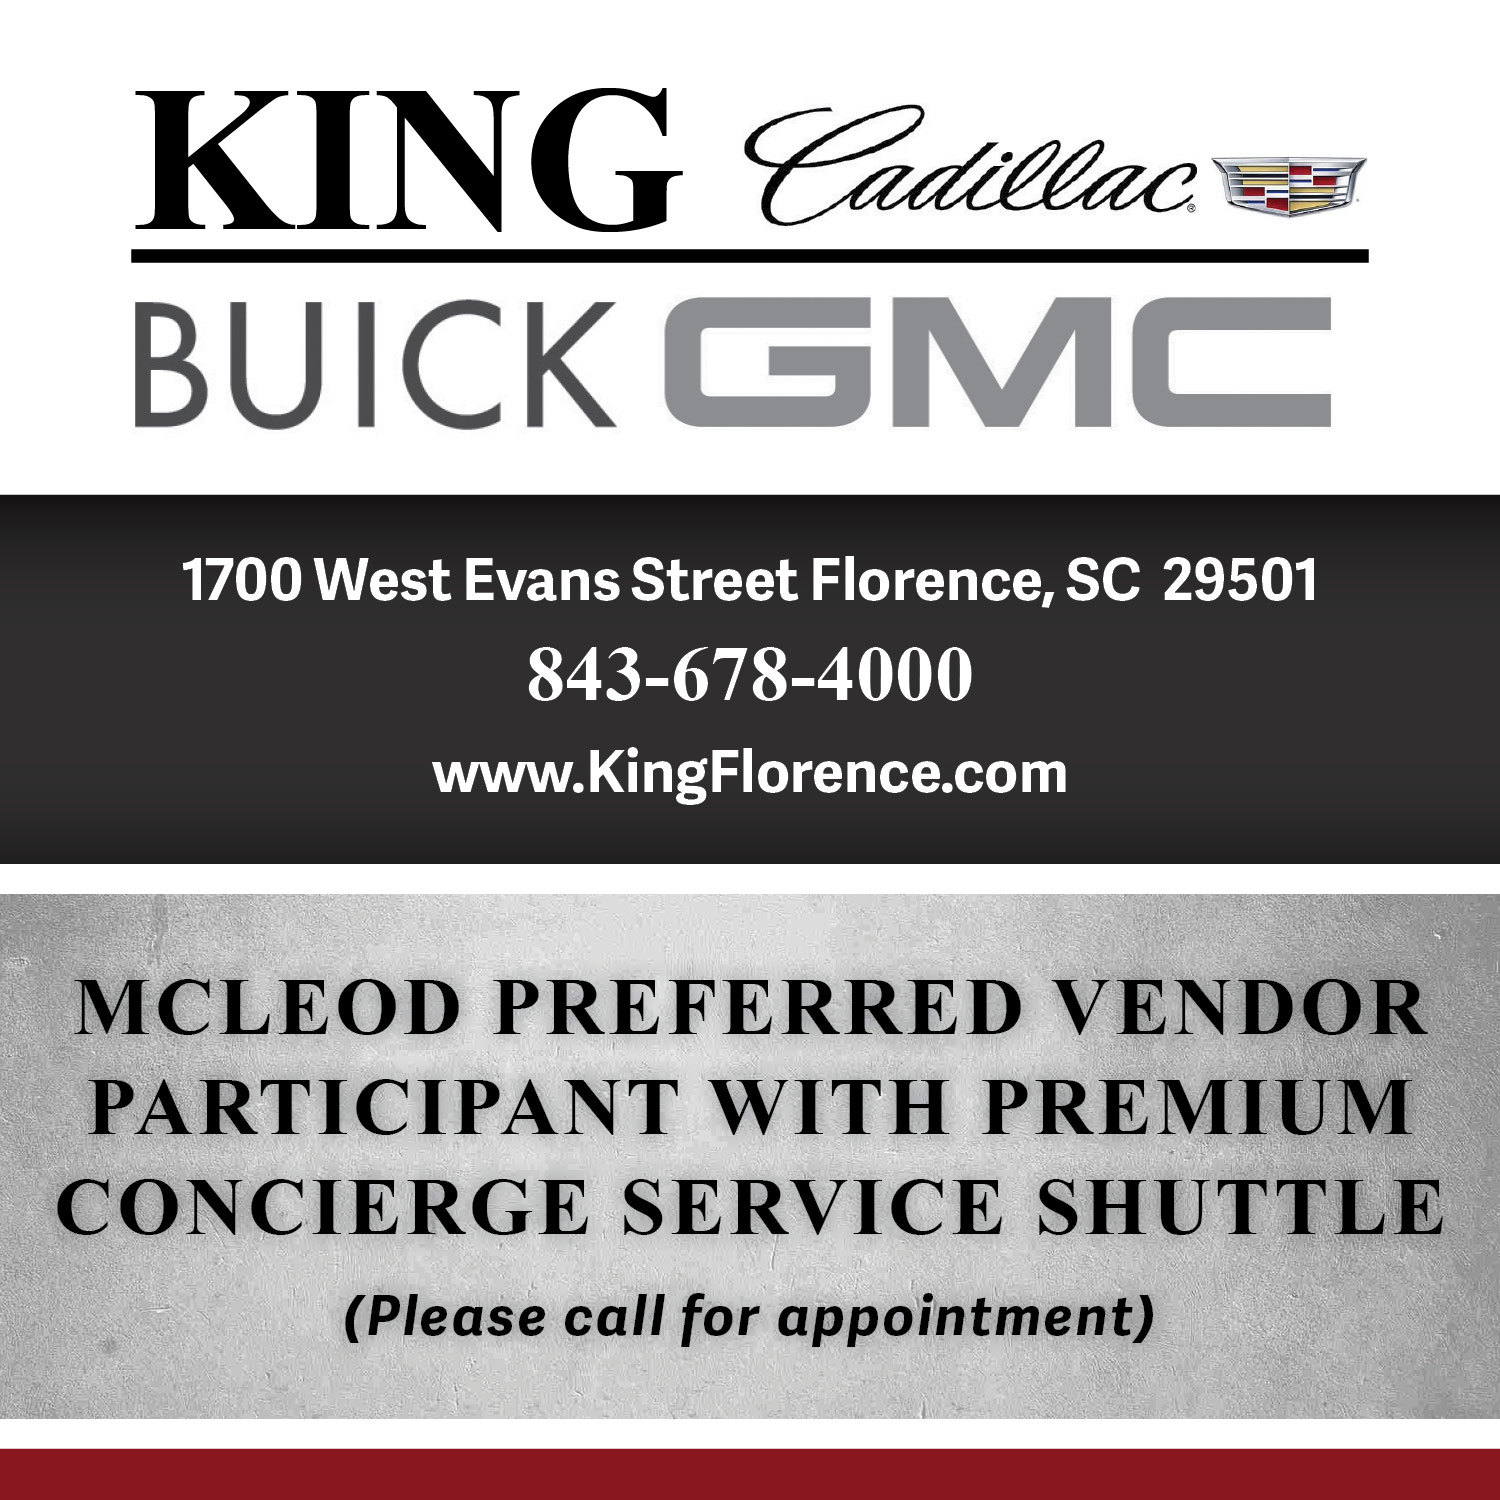 King Cadillac Buick GMC